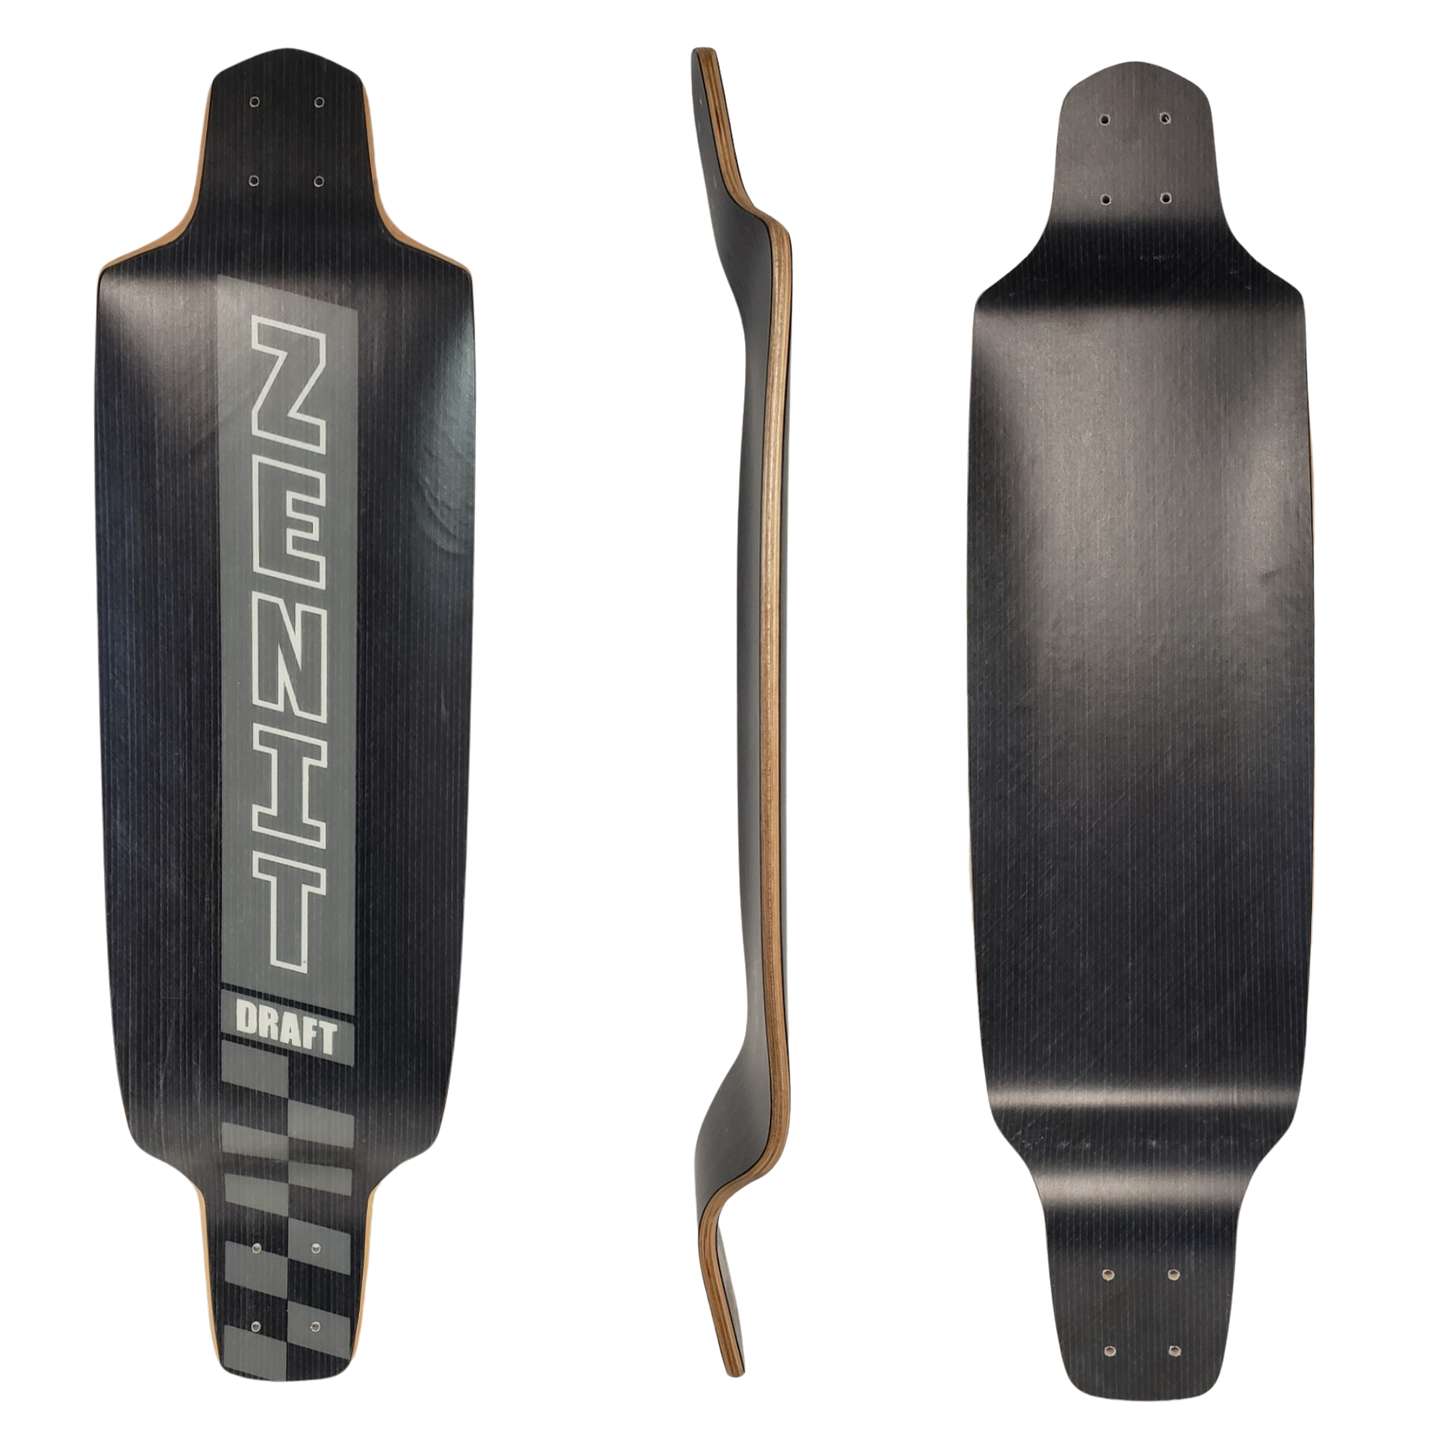 Zenit: Draft Longboard Deck